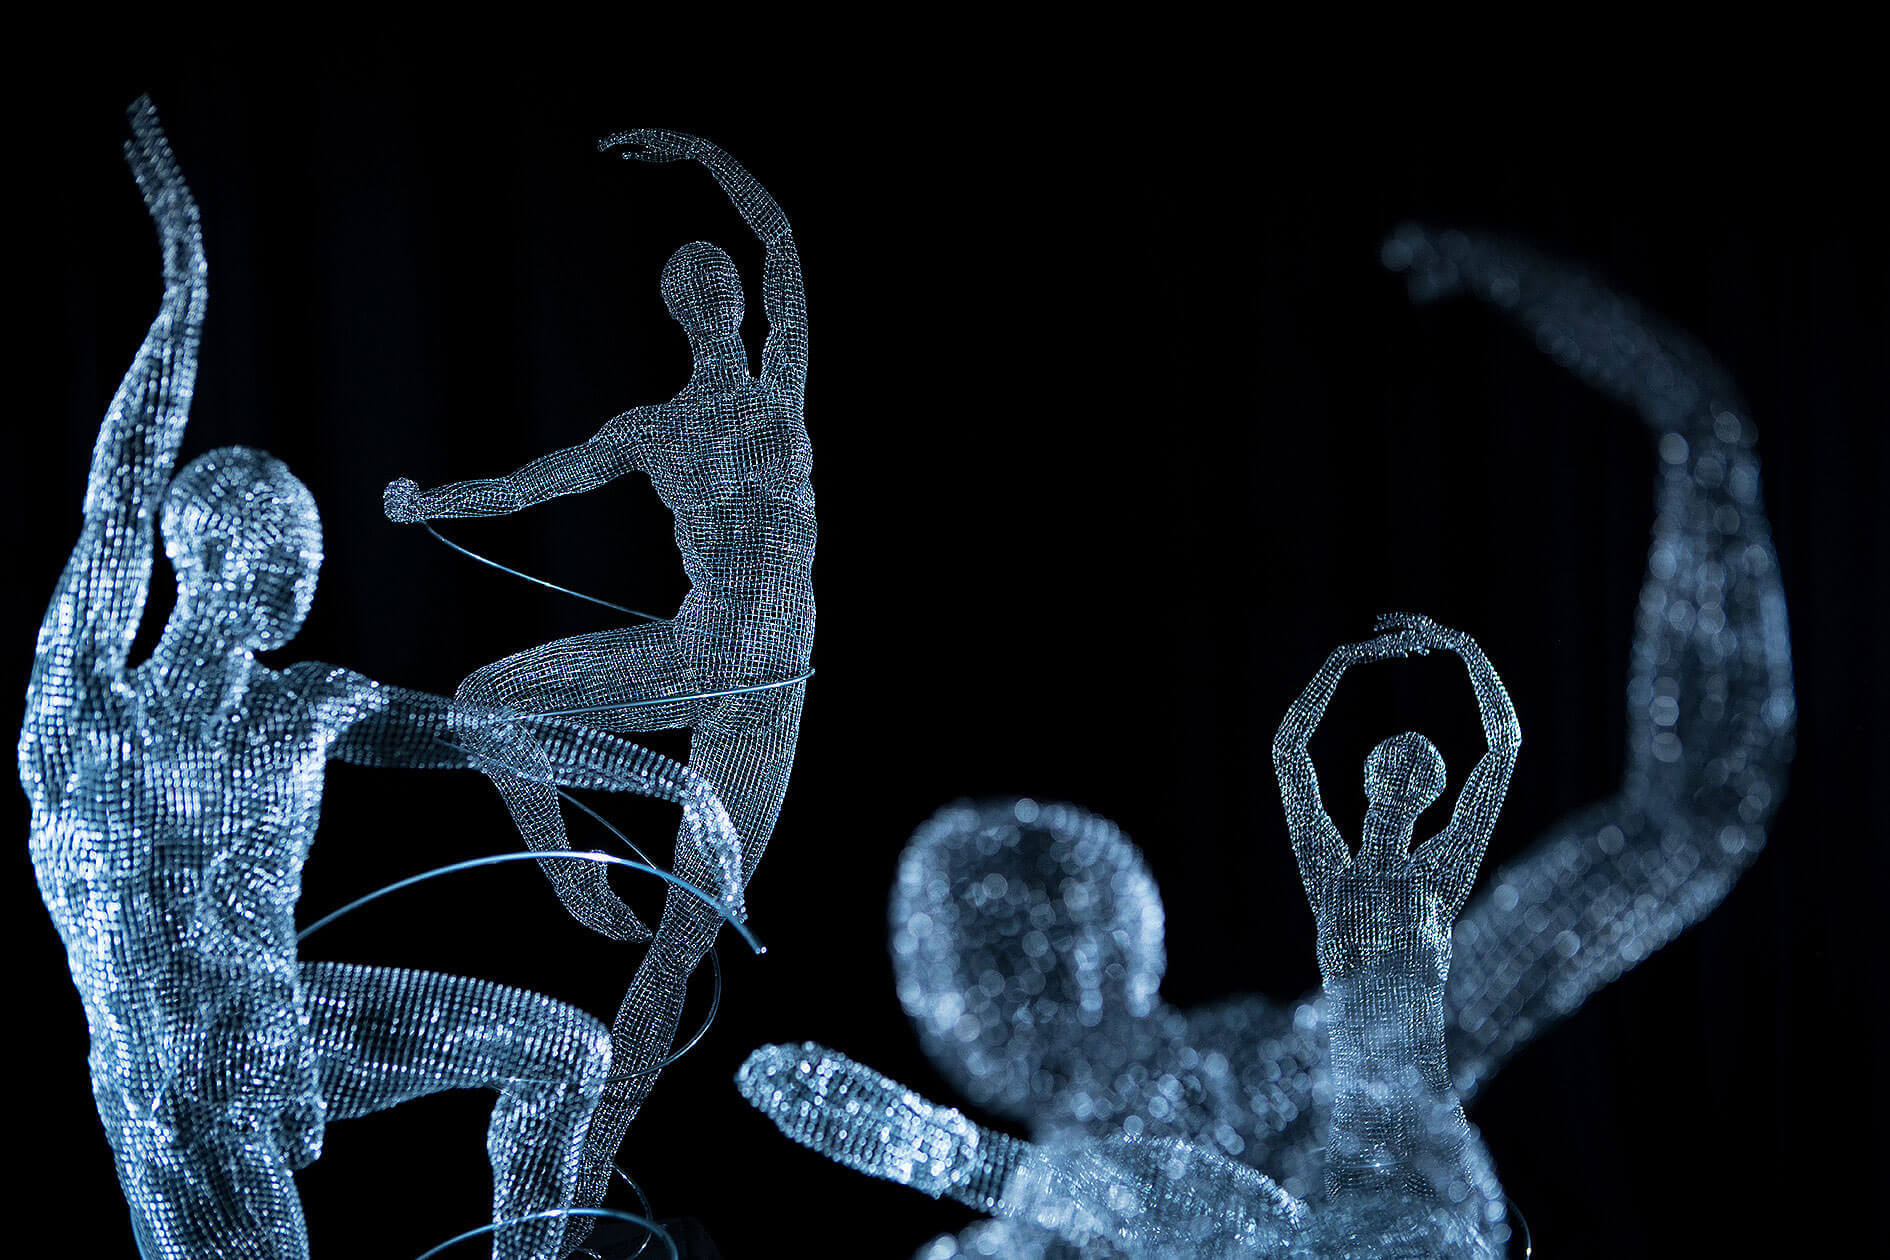 Michelle Castles Sculpture - Fibonacci Dancers